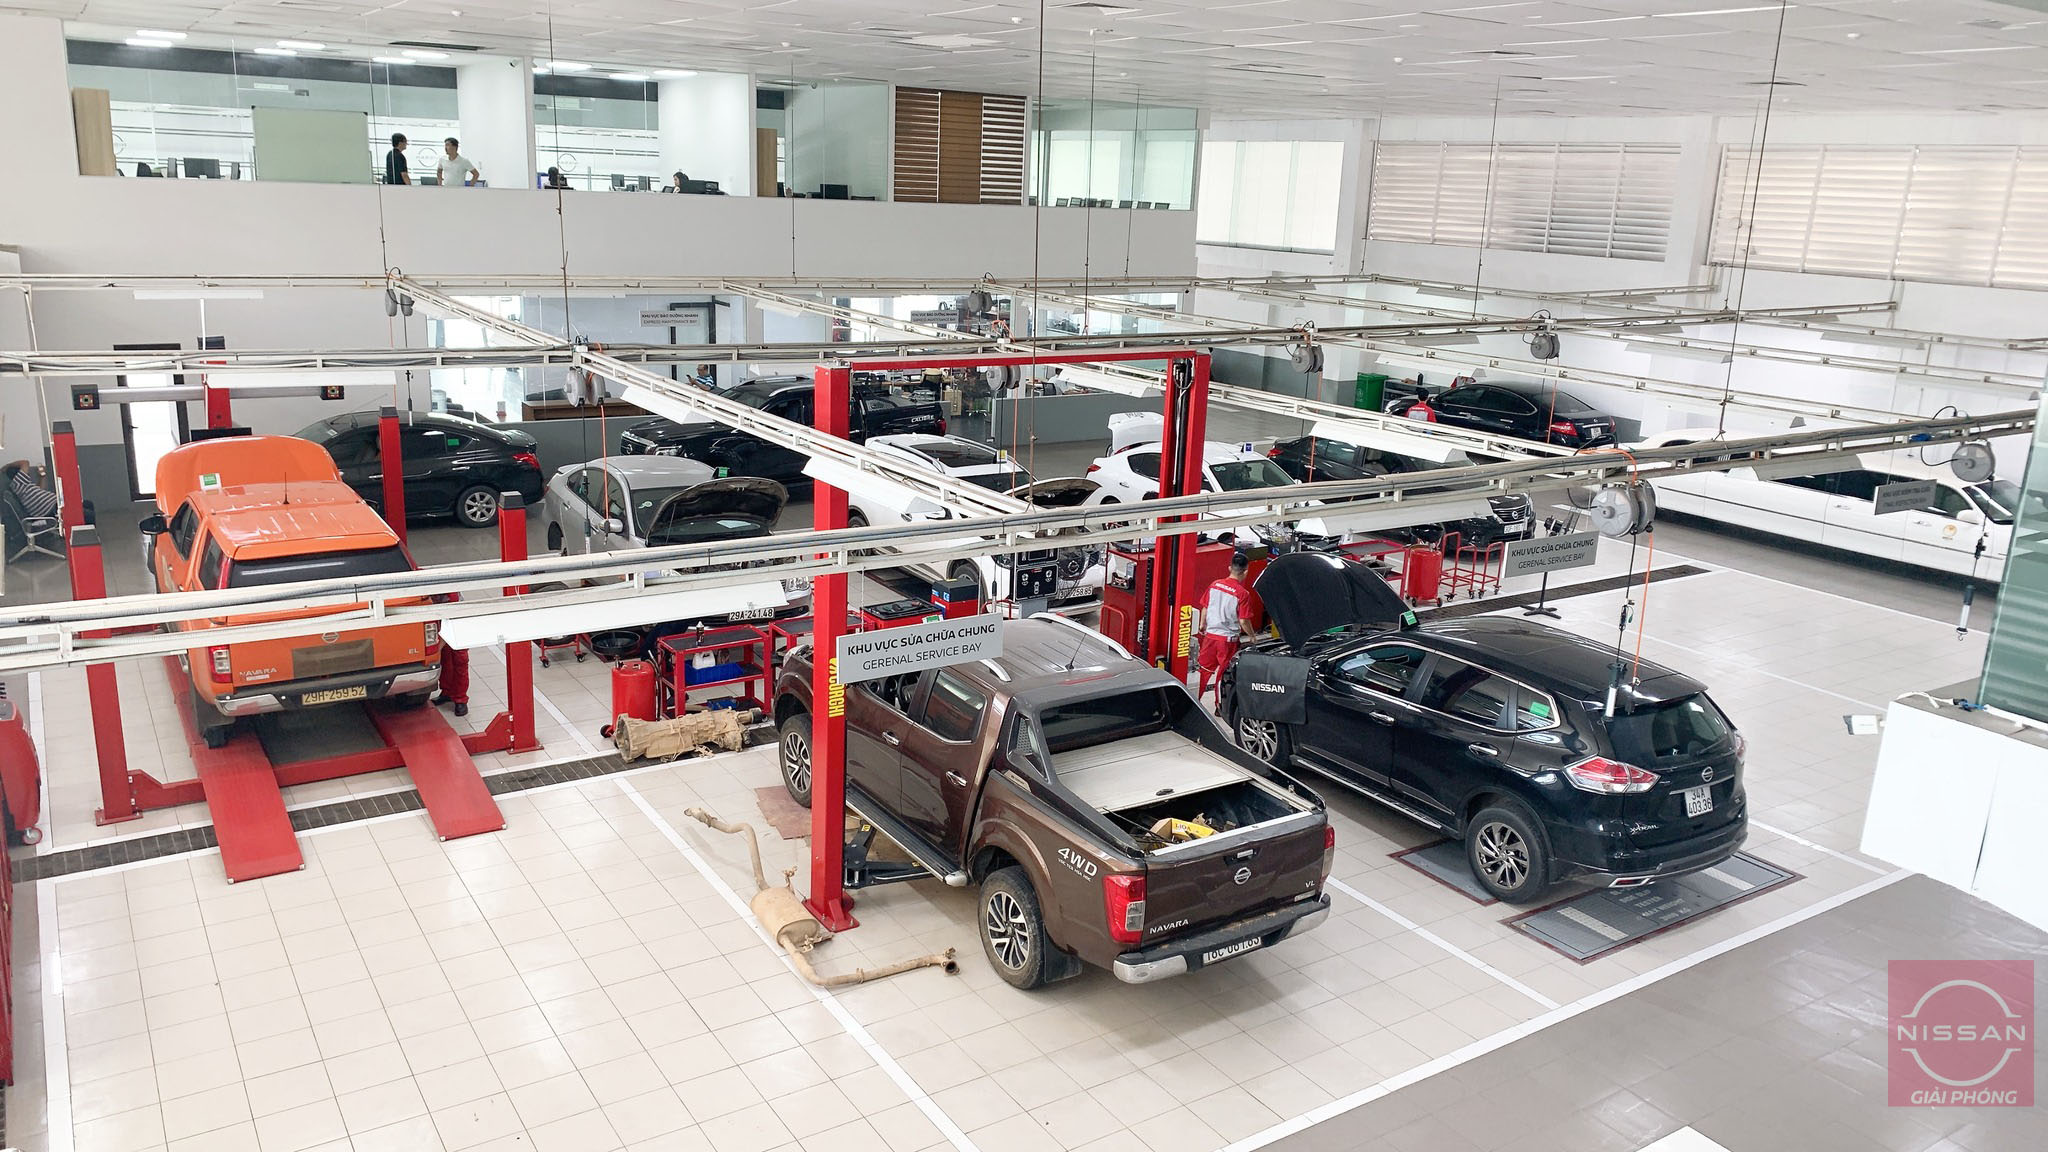 Gara sửa xe ô tô tại Hà Nội: Hình ảnh này sẽ giới thiệu cho bạn các địa điểm sửa chữa xe ô tô tại Hà Nội với chất lượng dịch vụ tốt nhất và giá cả hợp lý nhất.